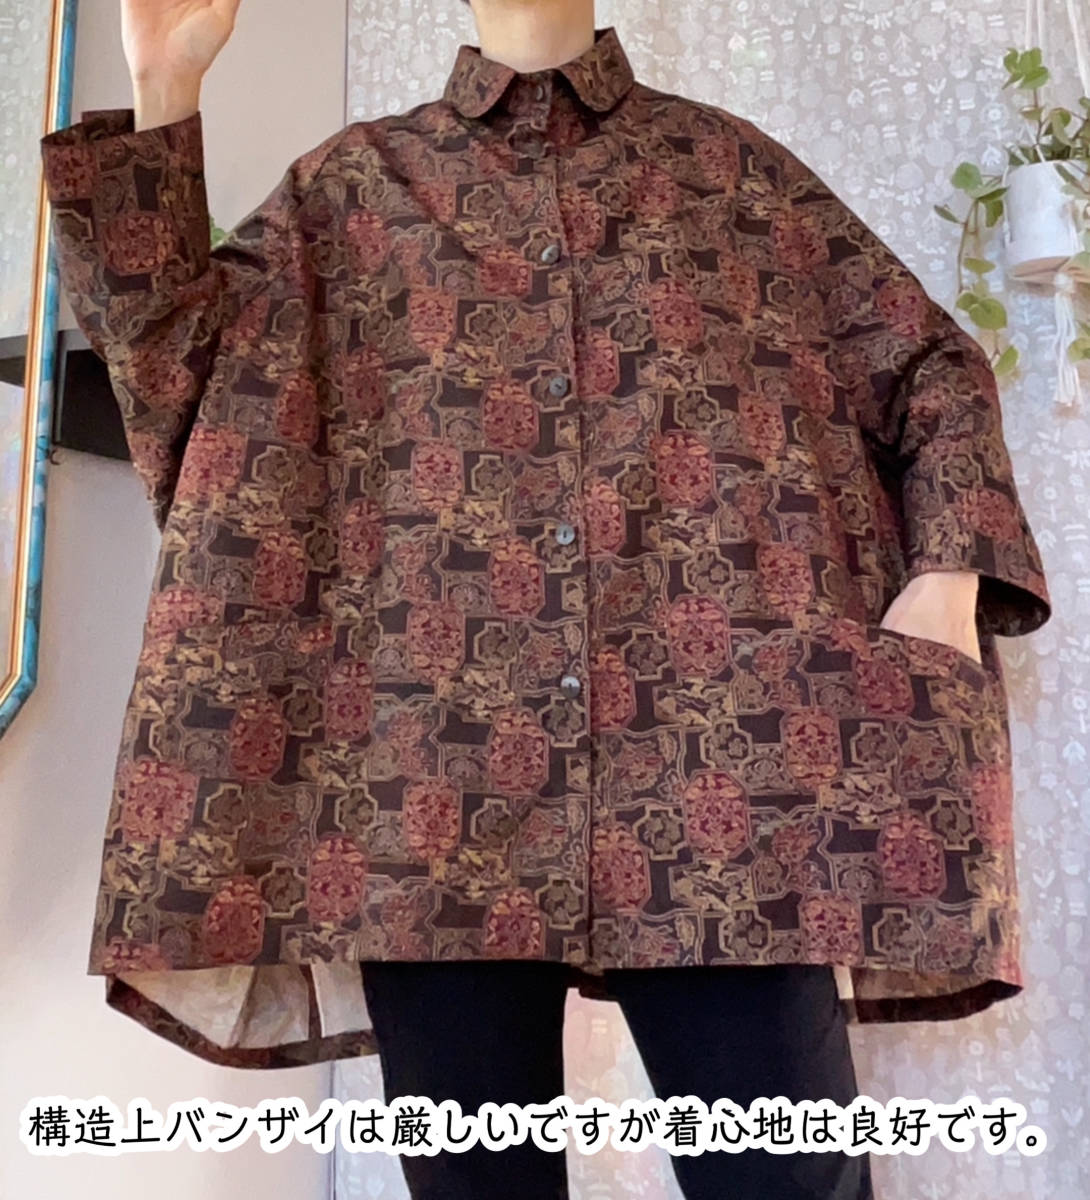  окраска Ooshima способ большой рубашка широкий запонки .. обе с карманом кимоно переделка ручная работа 